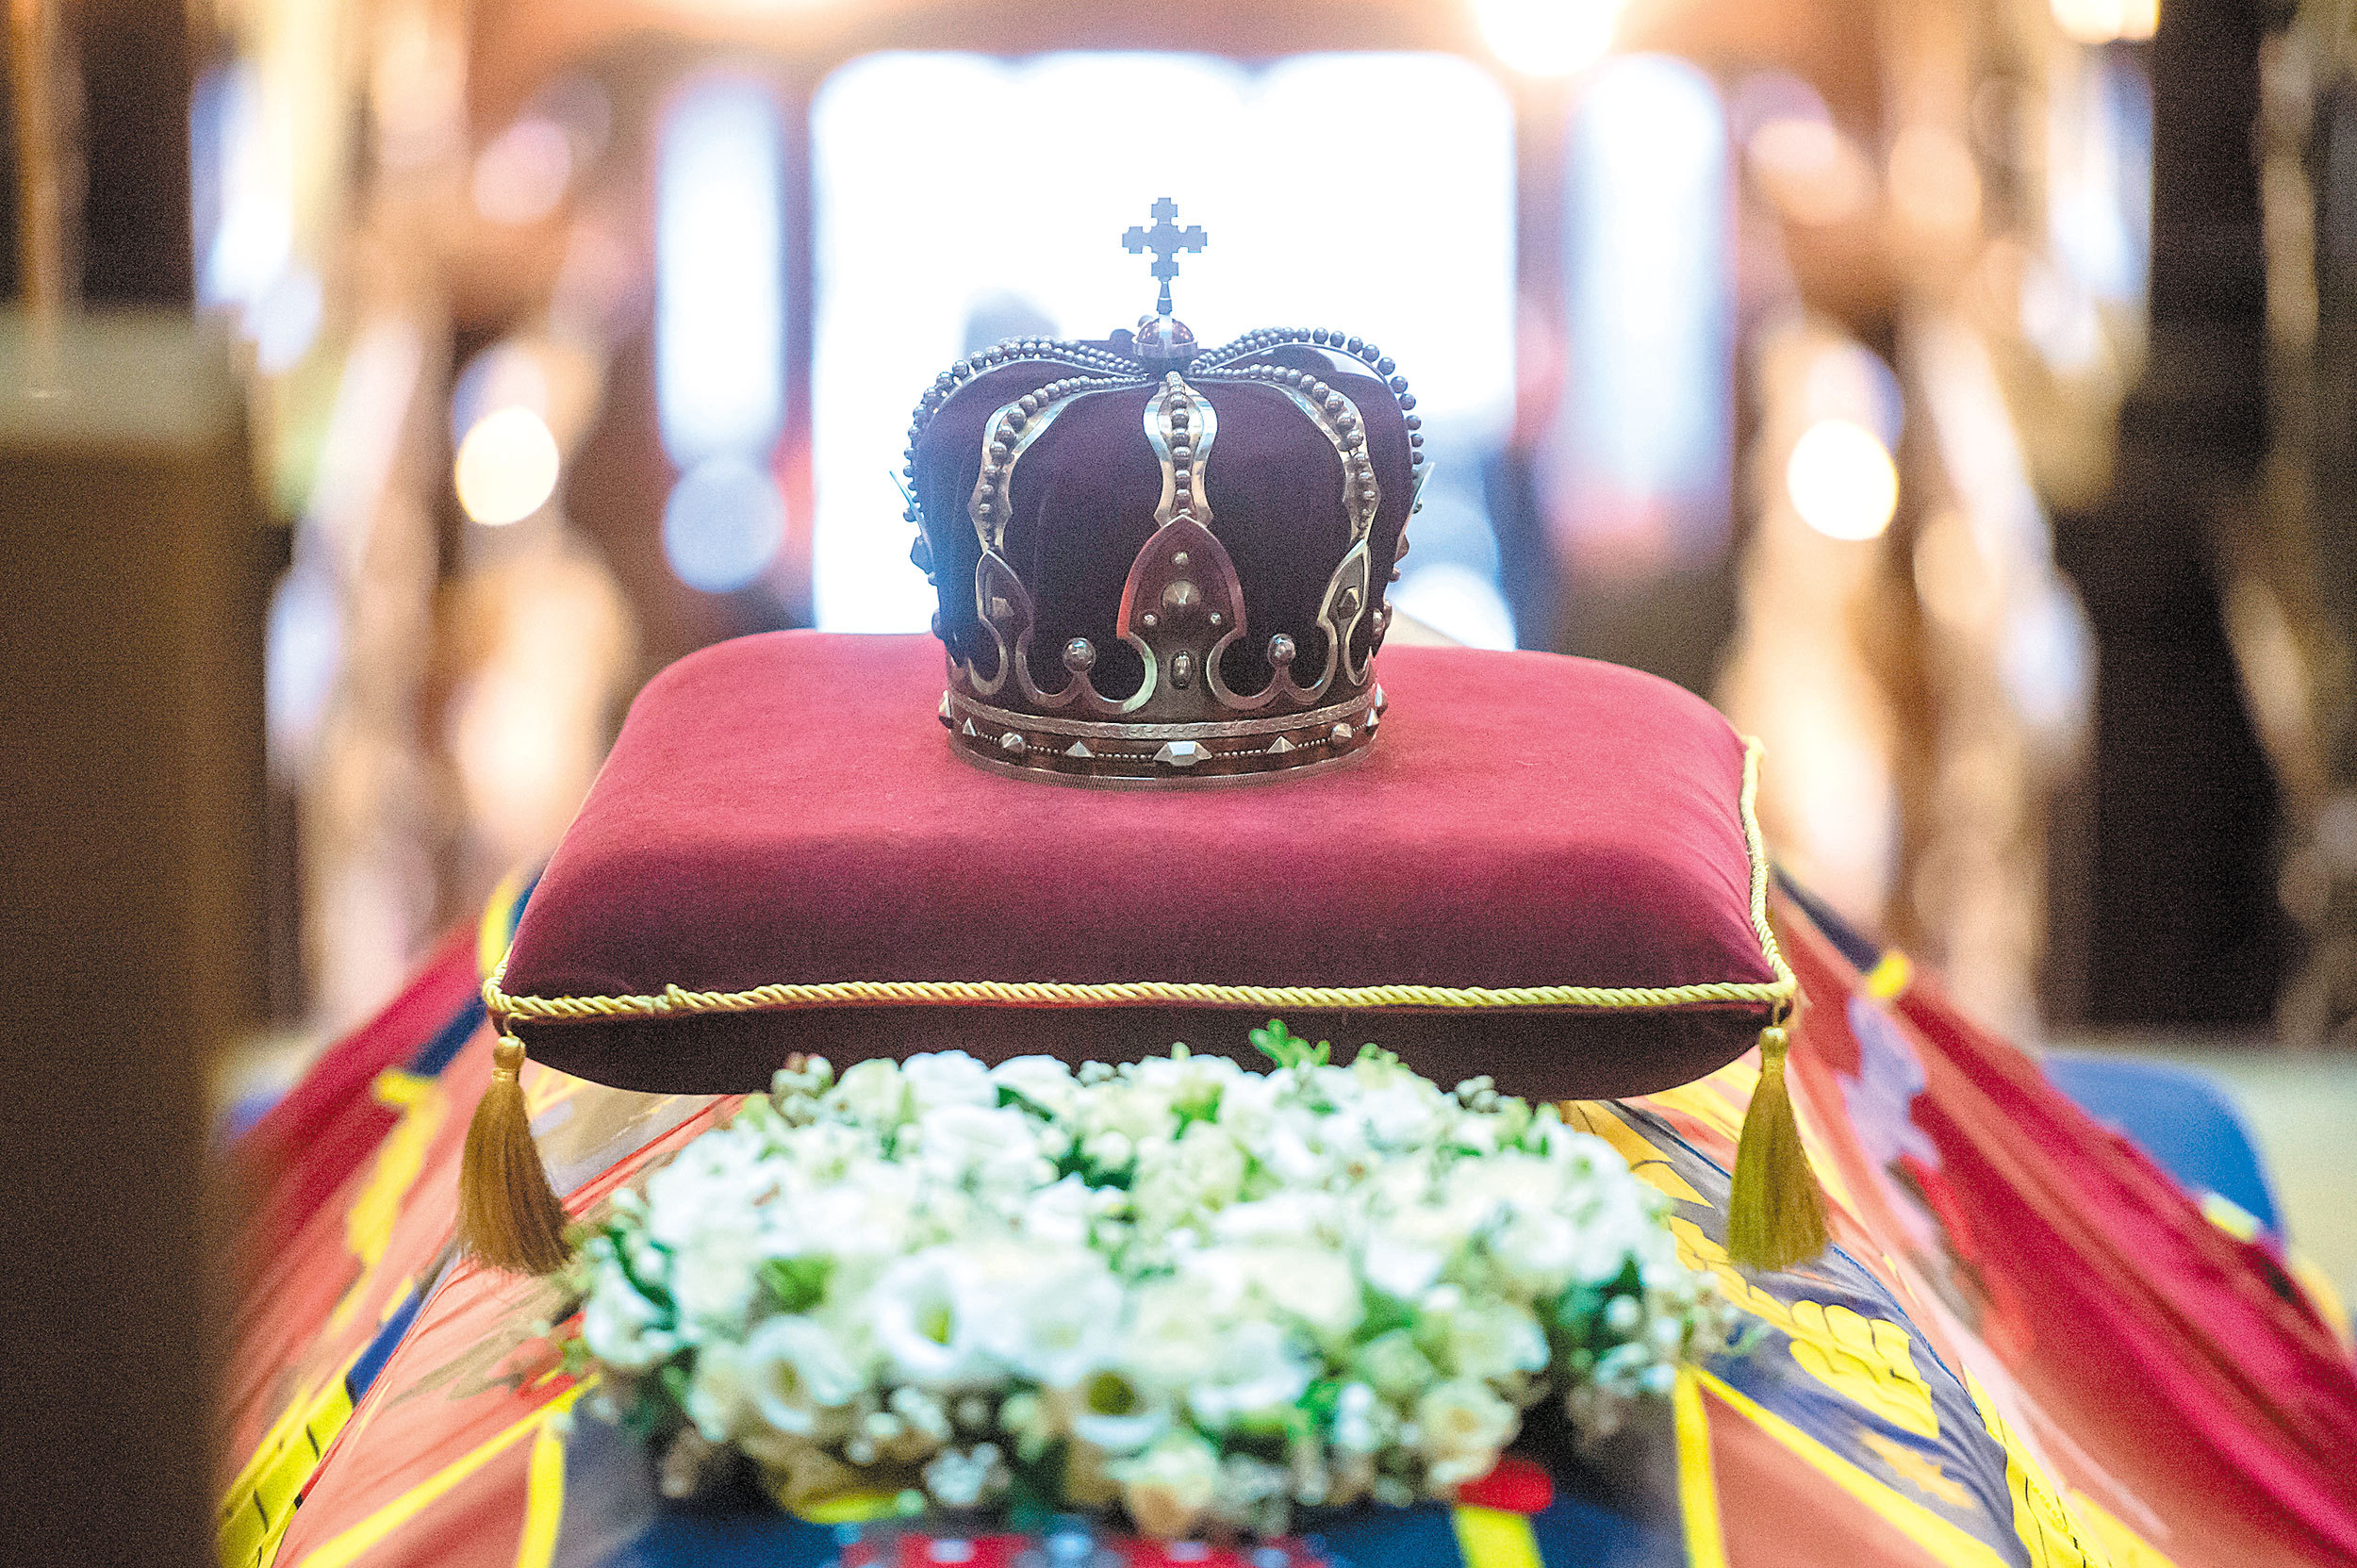 Curtea de Argeş: Pregătiri pentru funeraliile regale - străzi închise; băuturile alcoolice,interzise